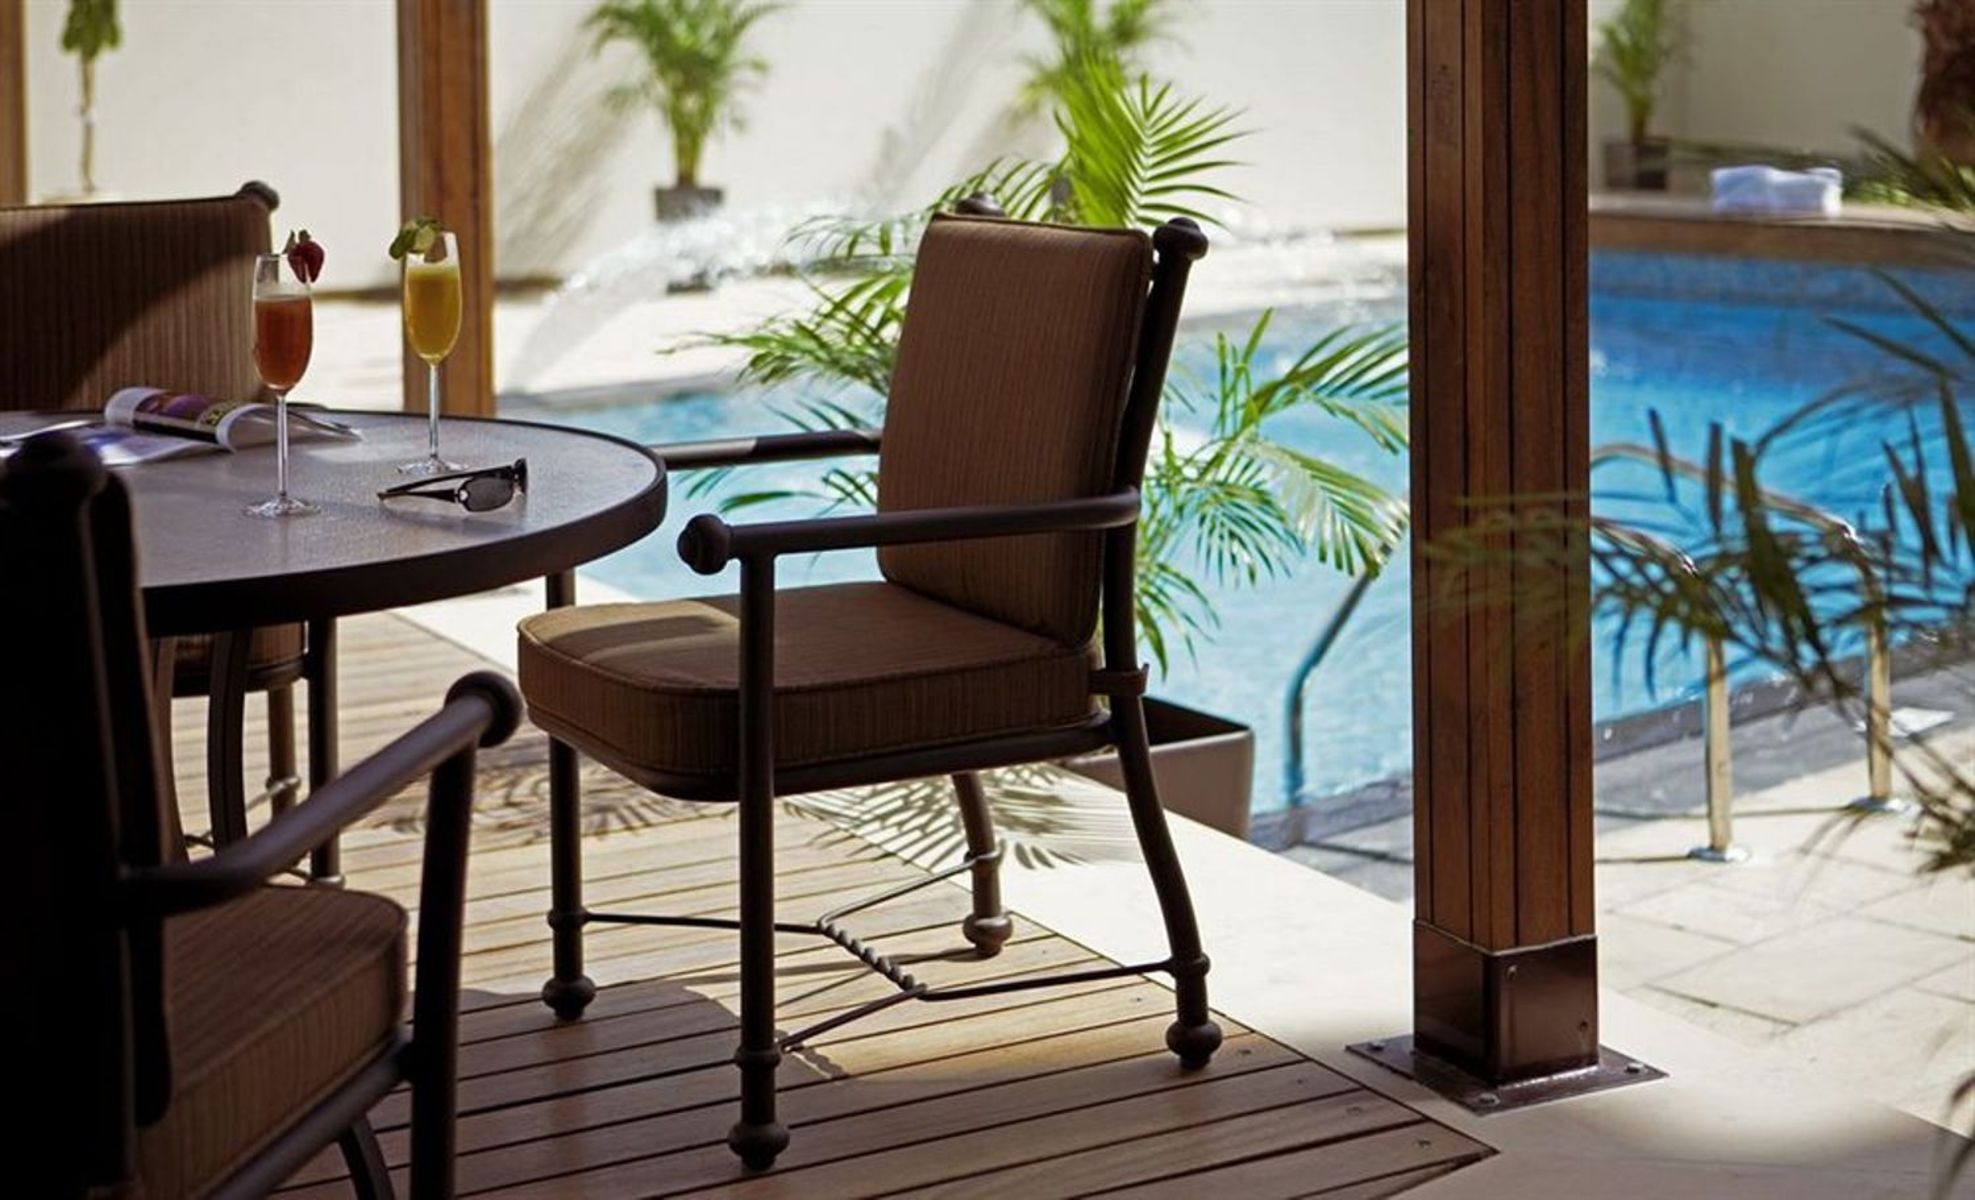 عکس های Hotel Dusit Princess Residence - Dubai Marina